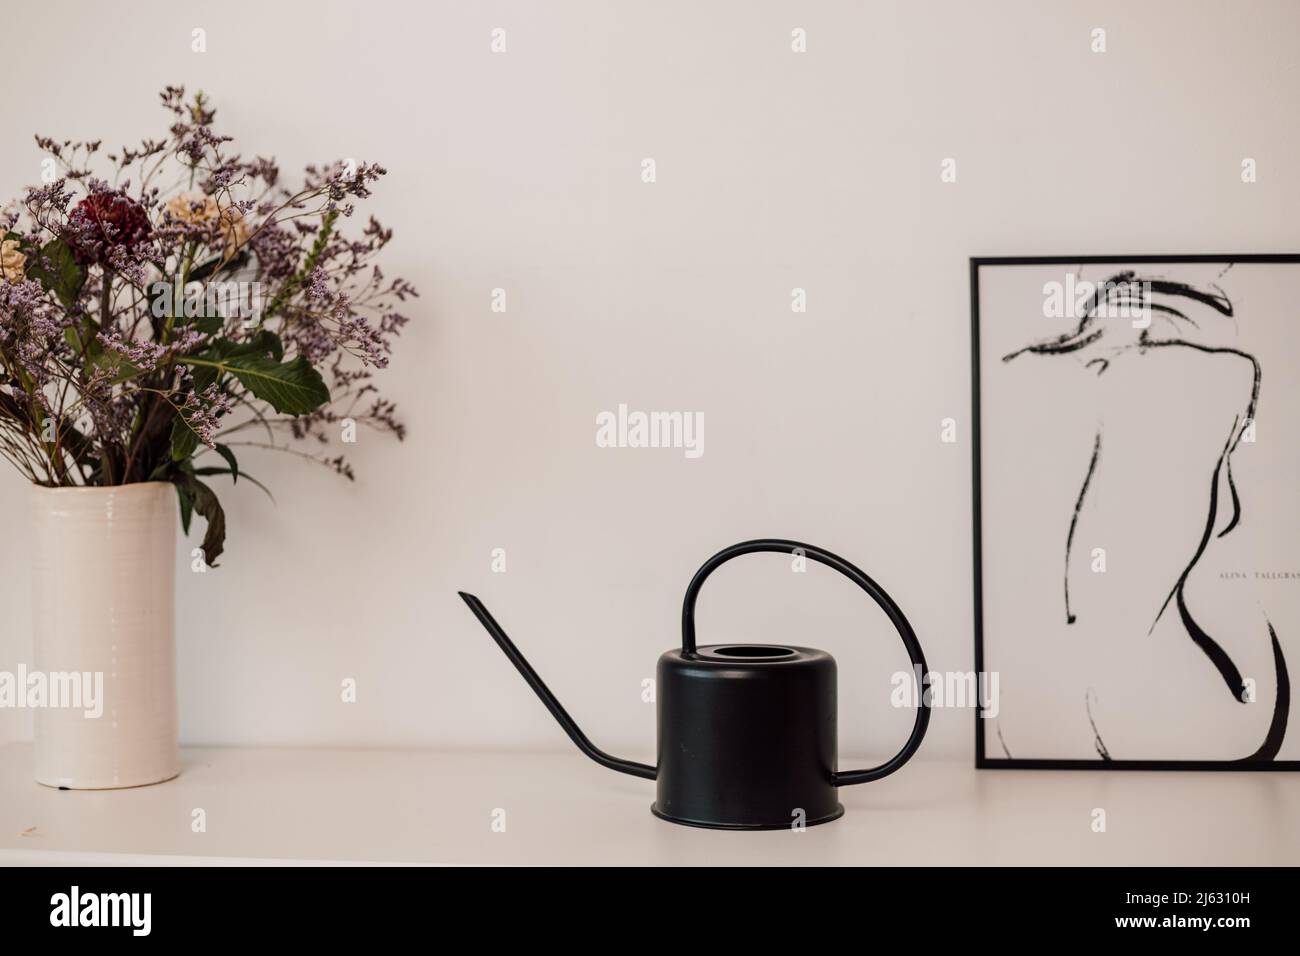 Un irrigatore a fiore nero si erge su una mensola bianca vicino a fiori e dipinti Foto Stock